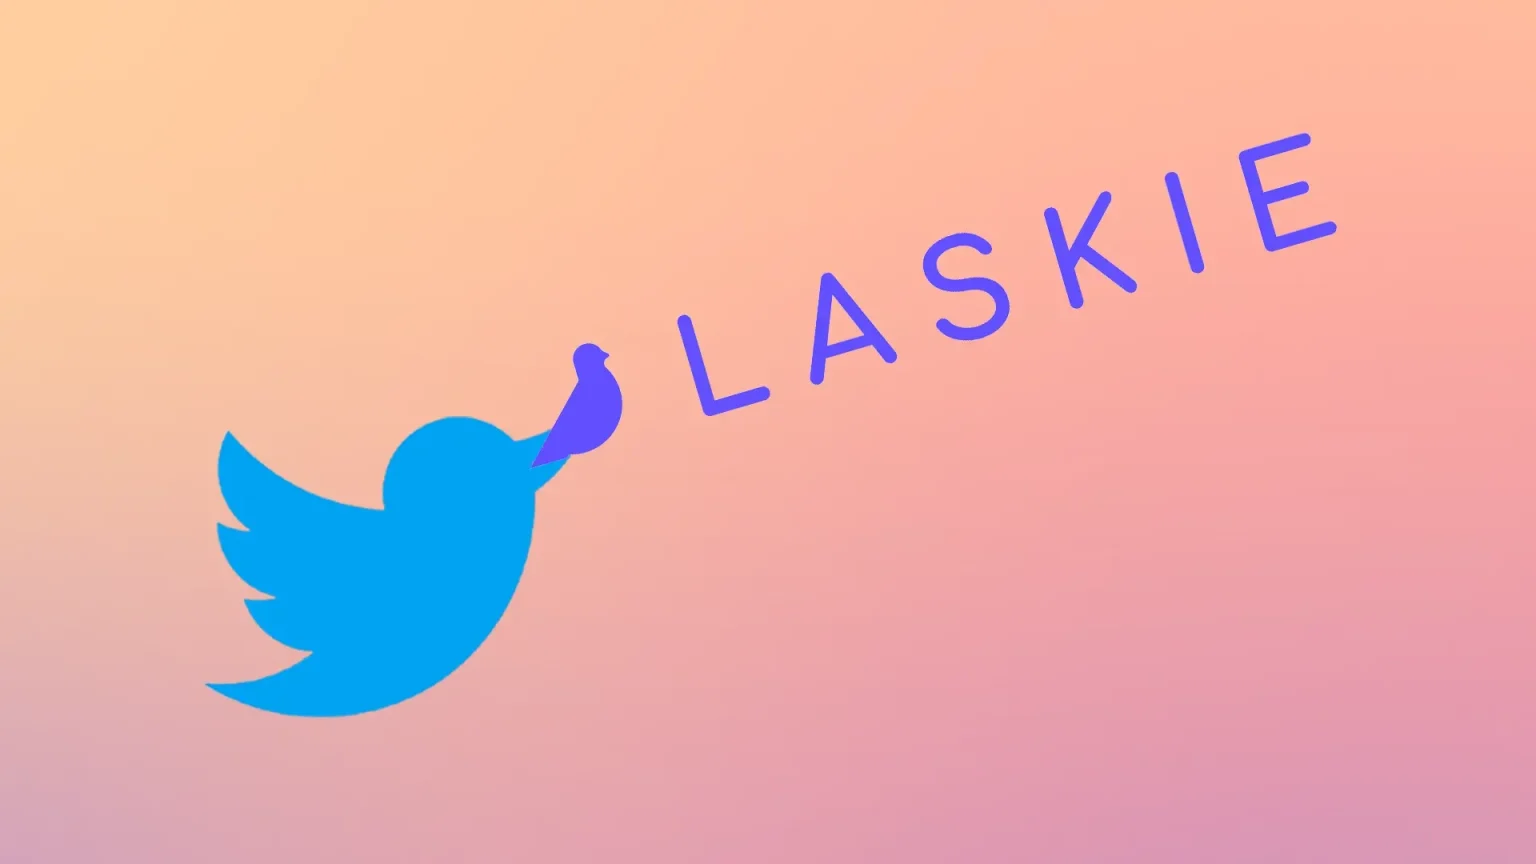 Twitter'ın çatı şirketi X Corp., iş bulma platformu Laskie'yi satın aldı